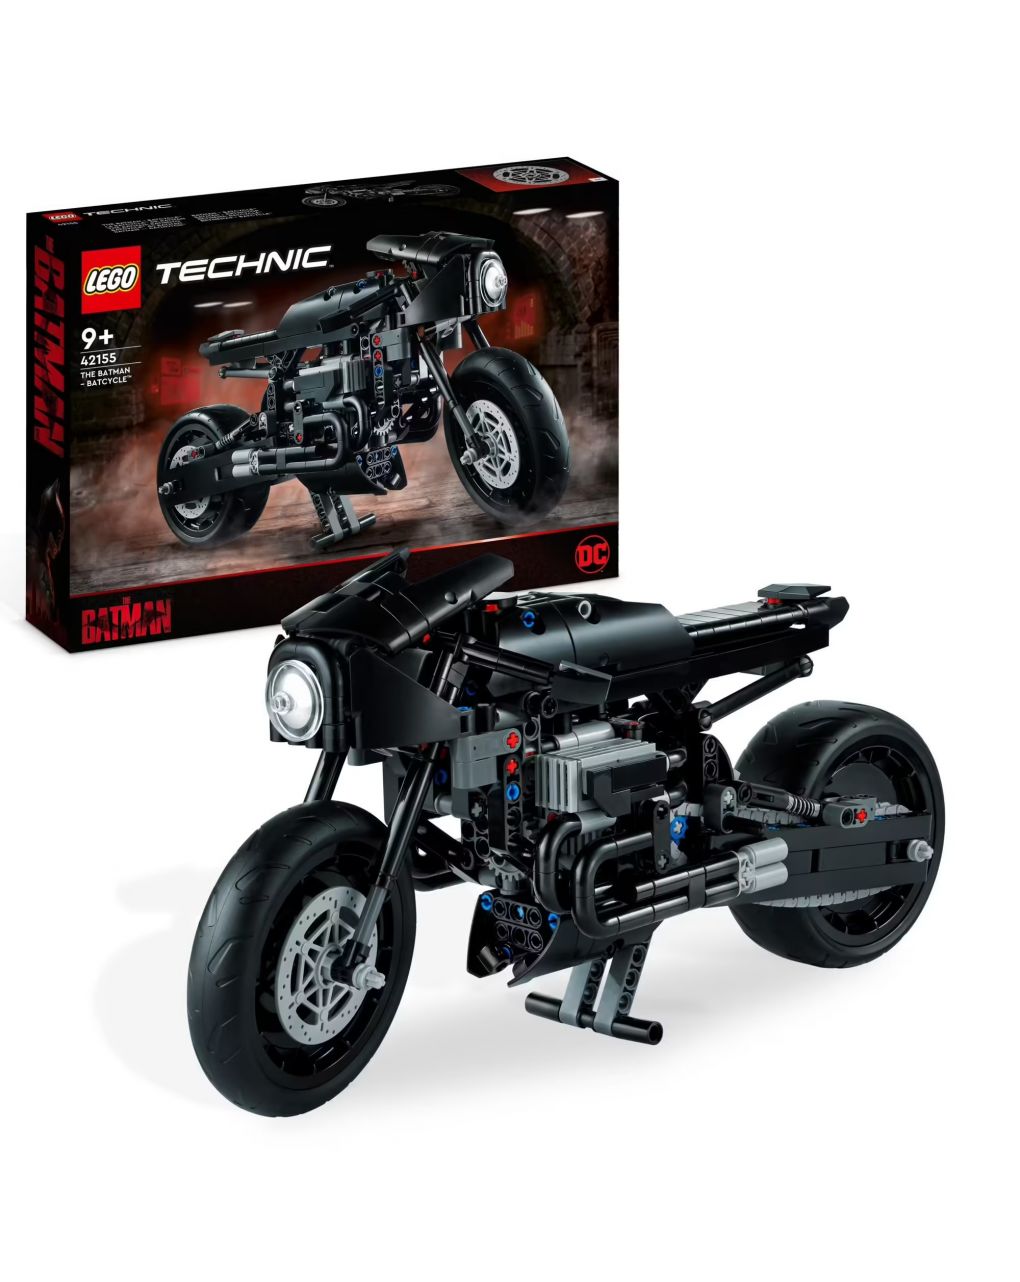 Batcycle moto giocattolo da collezione - film del 2022 - lego technic the batman